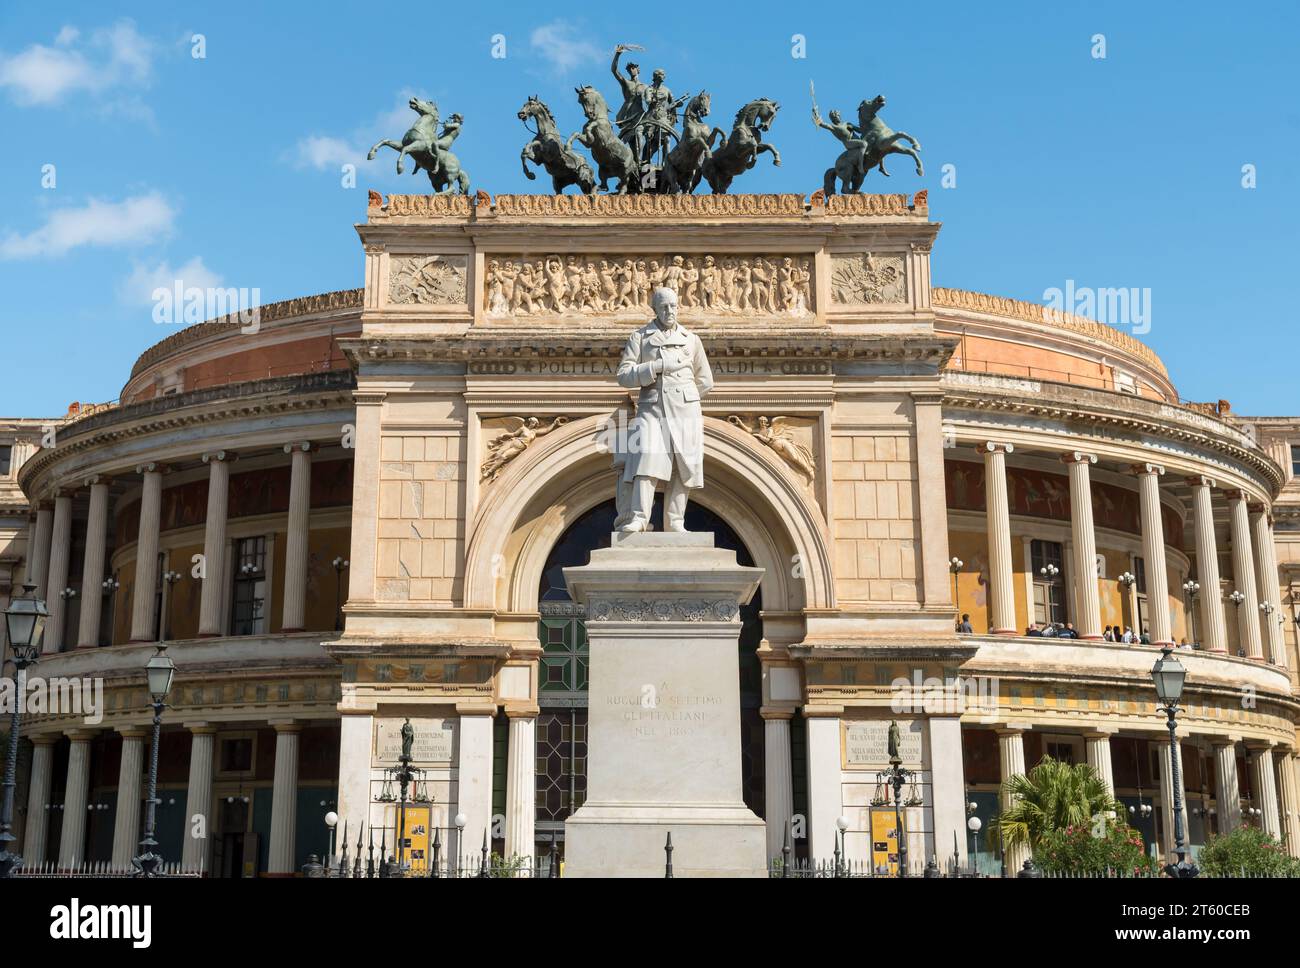 Palerme, Sicile, Italie - 7 octobre 2017 : vue du théâtre Politeama Garibaldi, situé sur la Piazza Ruggero Settimo à Palerme. Banque D'Images